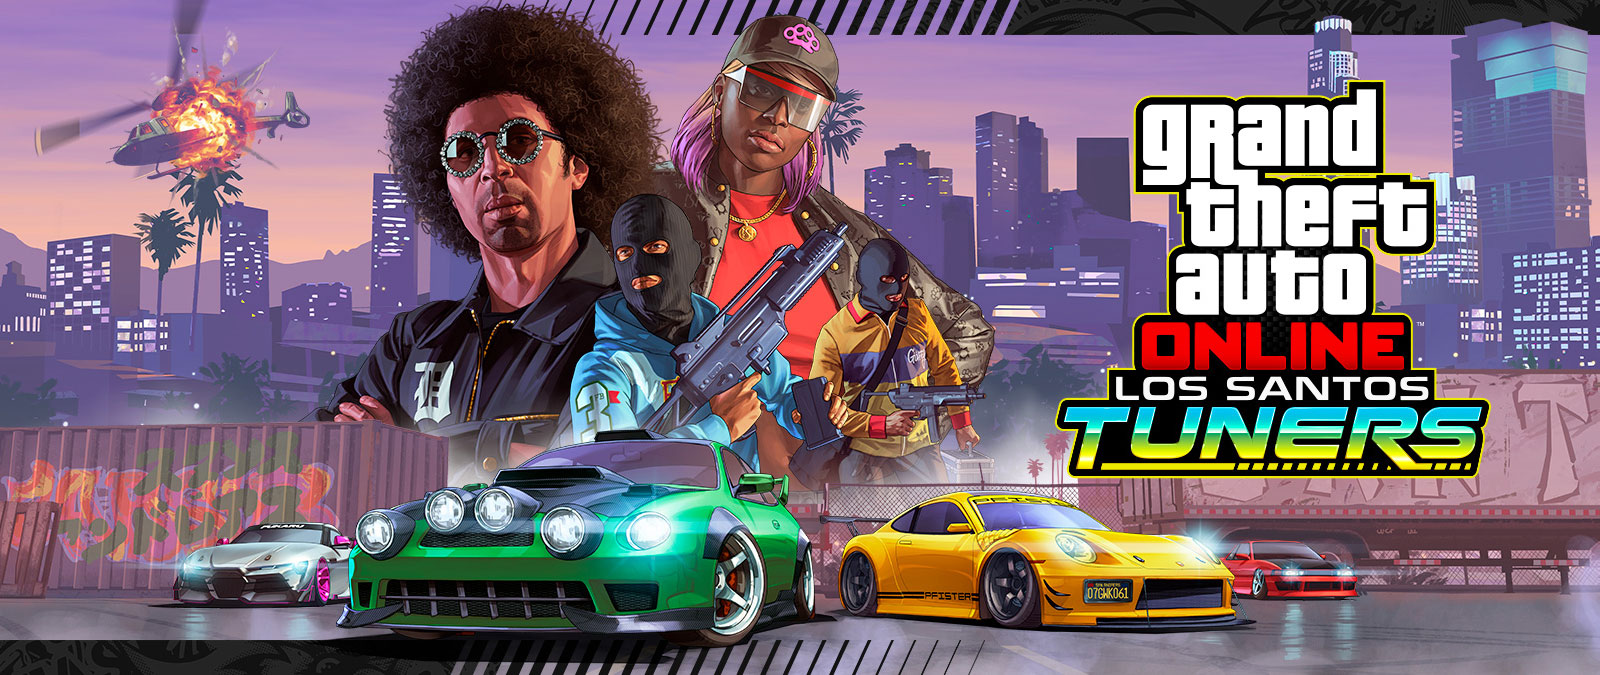 Grand Theft Auto Online, Los Santos Tuners. Fire karakterer, der poserer, foran en by og fire superbiler under dem 